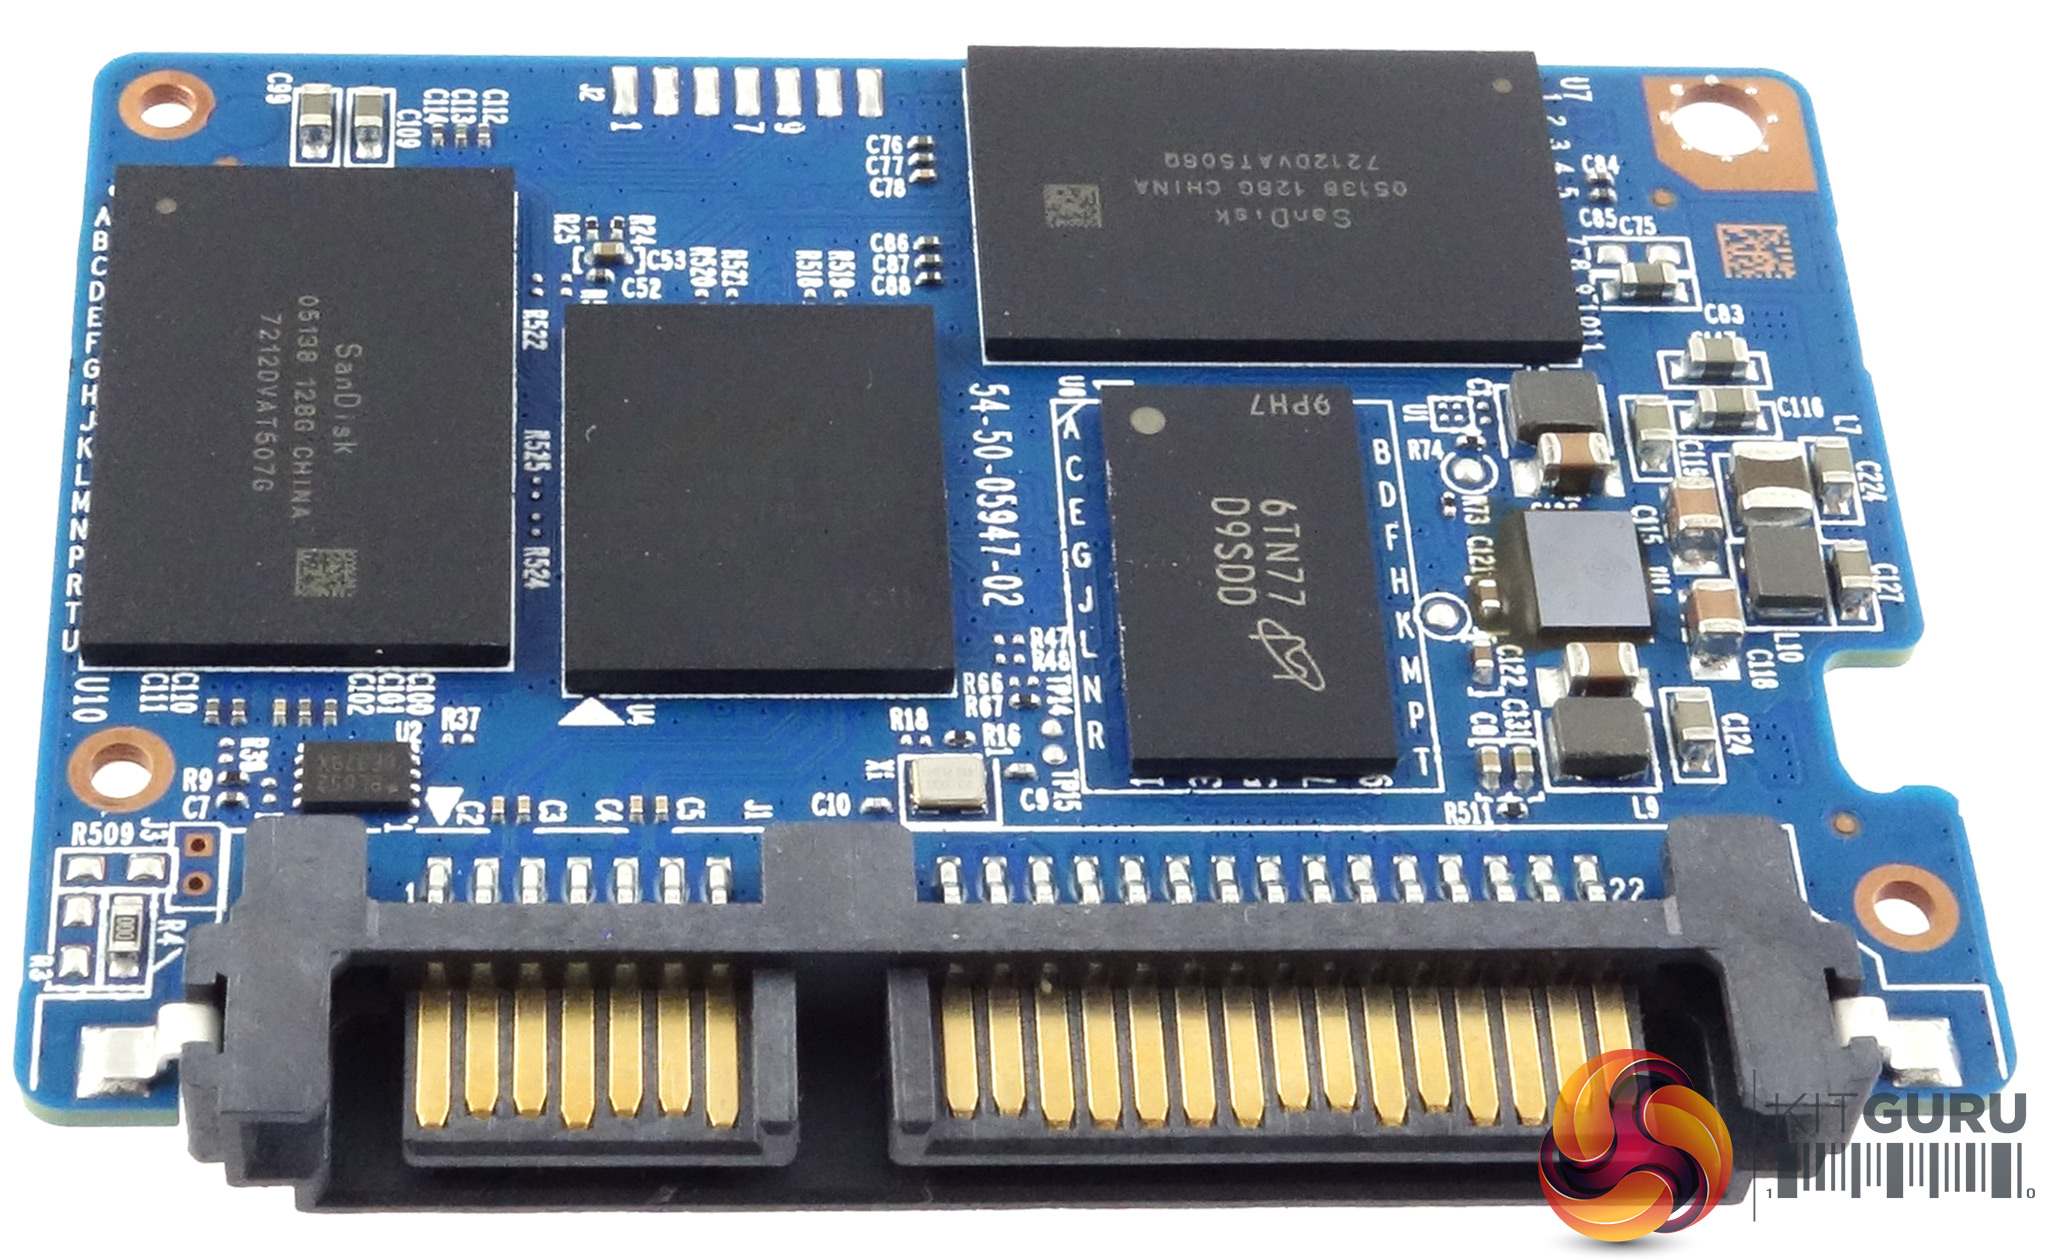 WD Blue 3D NAND 500GB SSD Review - Page 2 - KitGuru